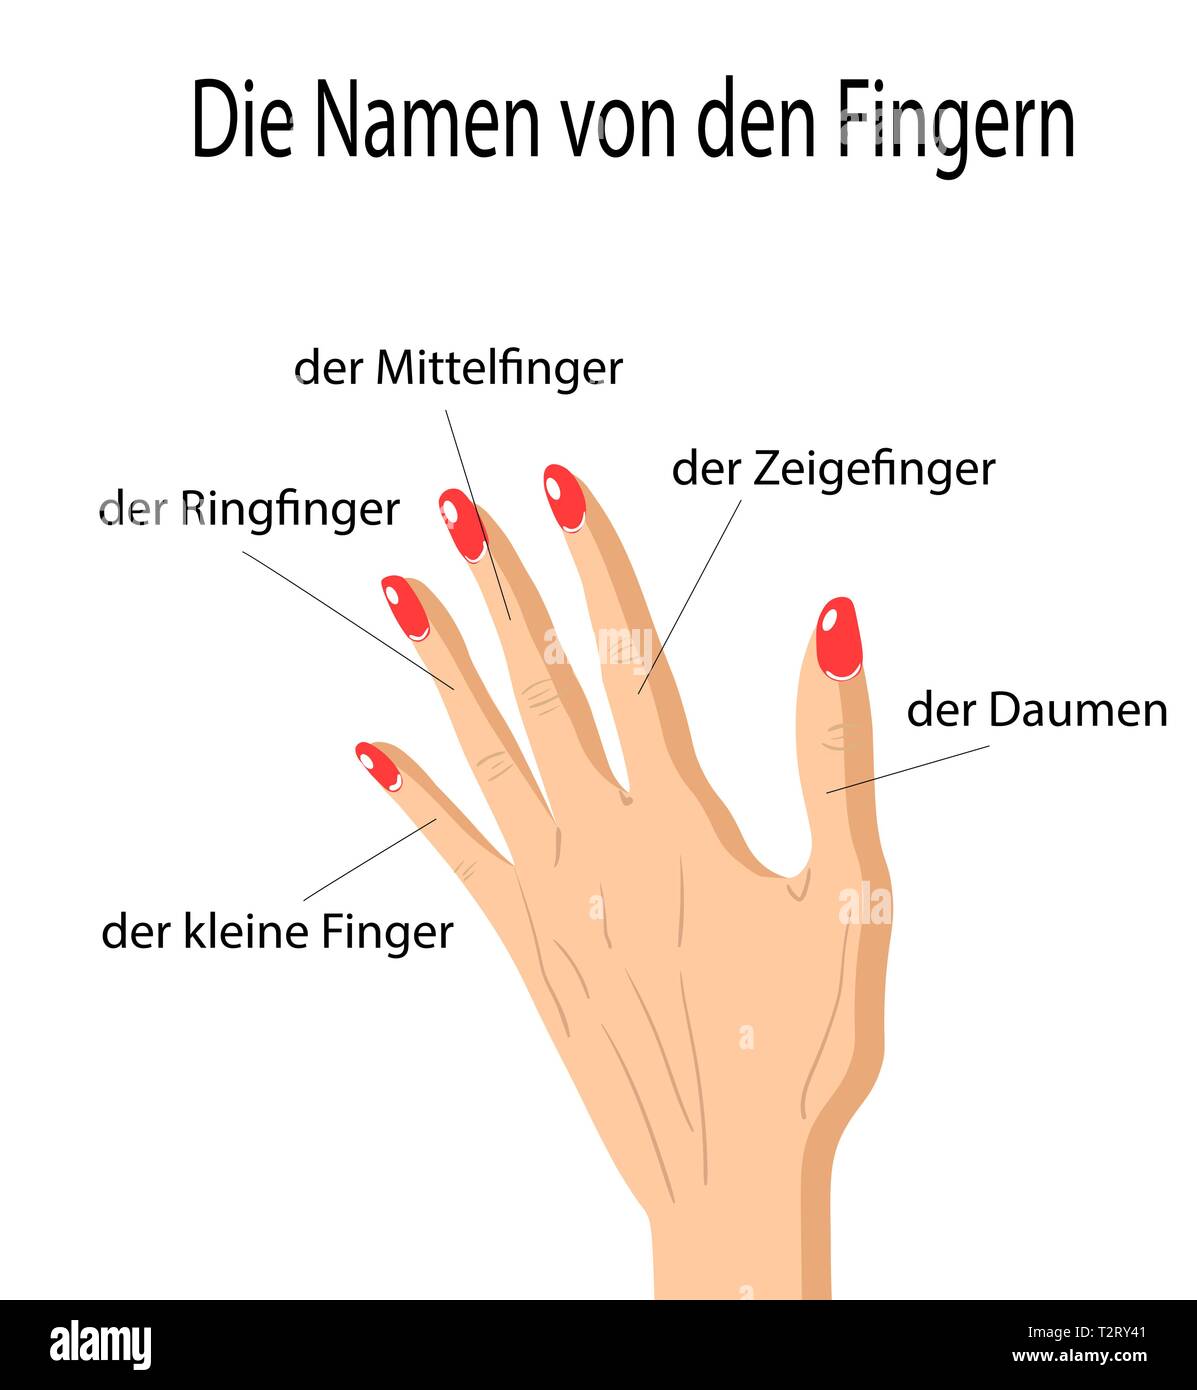 Finger Namen der Teile des menschlichen Körpers in deutscher Sprache, eine Hand gezeichnet Vektor Cartoon Illustration der menschlichen Finger und seinen Namen. Stock Vektor